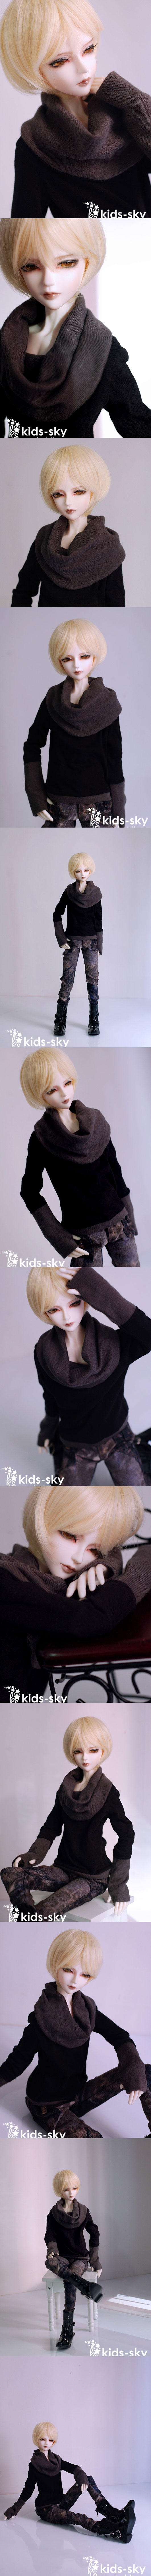 球体関節人形 60cm人形 Don 男の子_SDサイズ人形_Kids-sky_ドール本体_ 